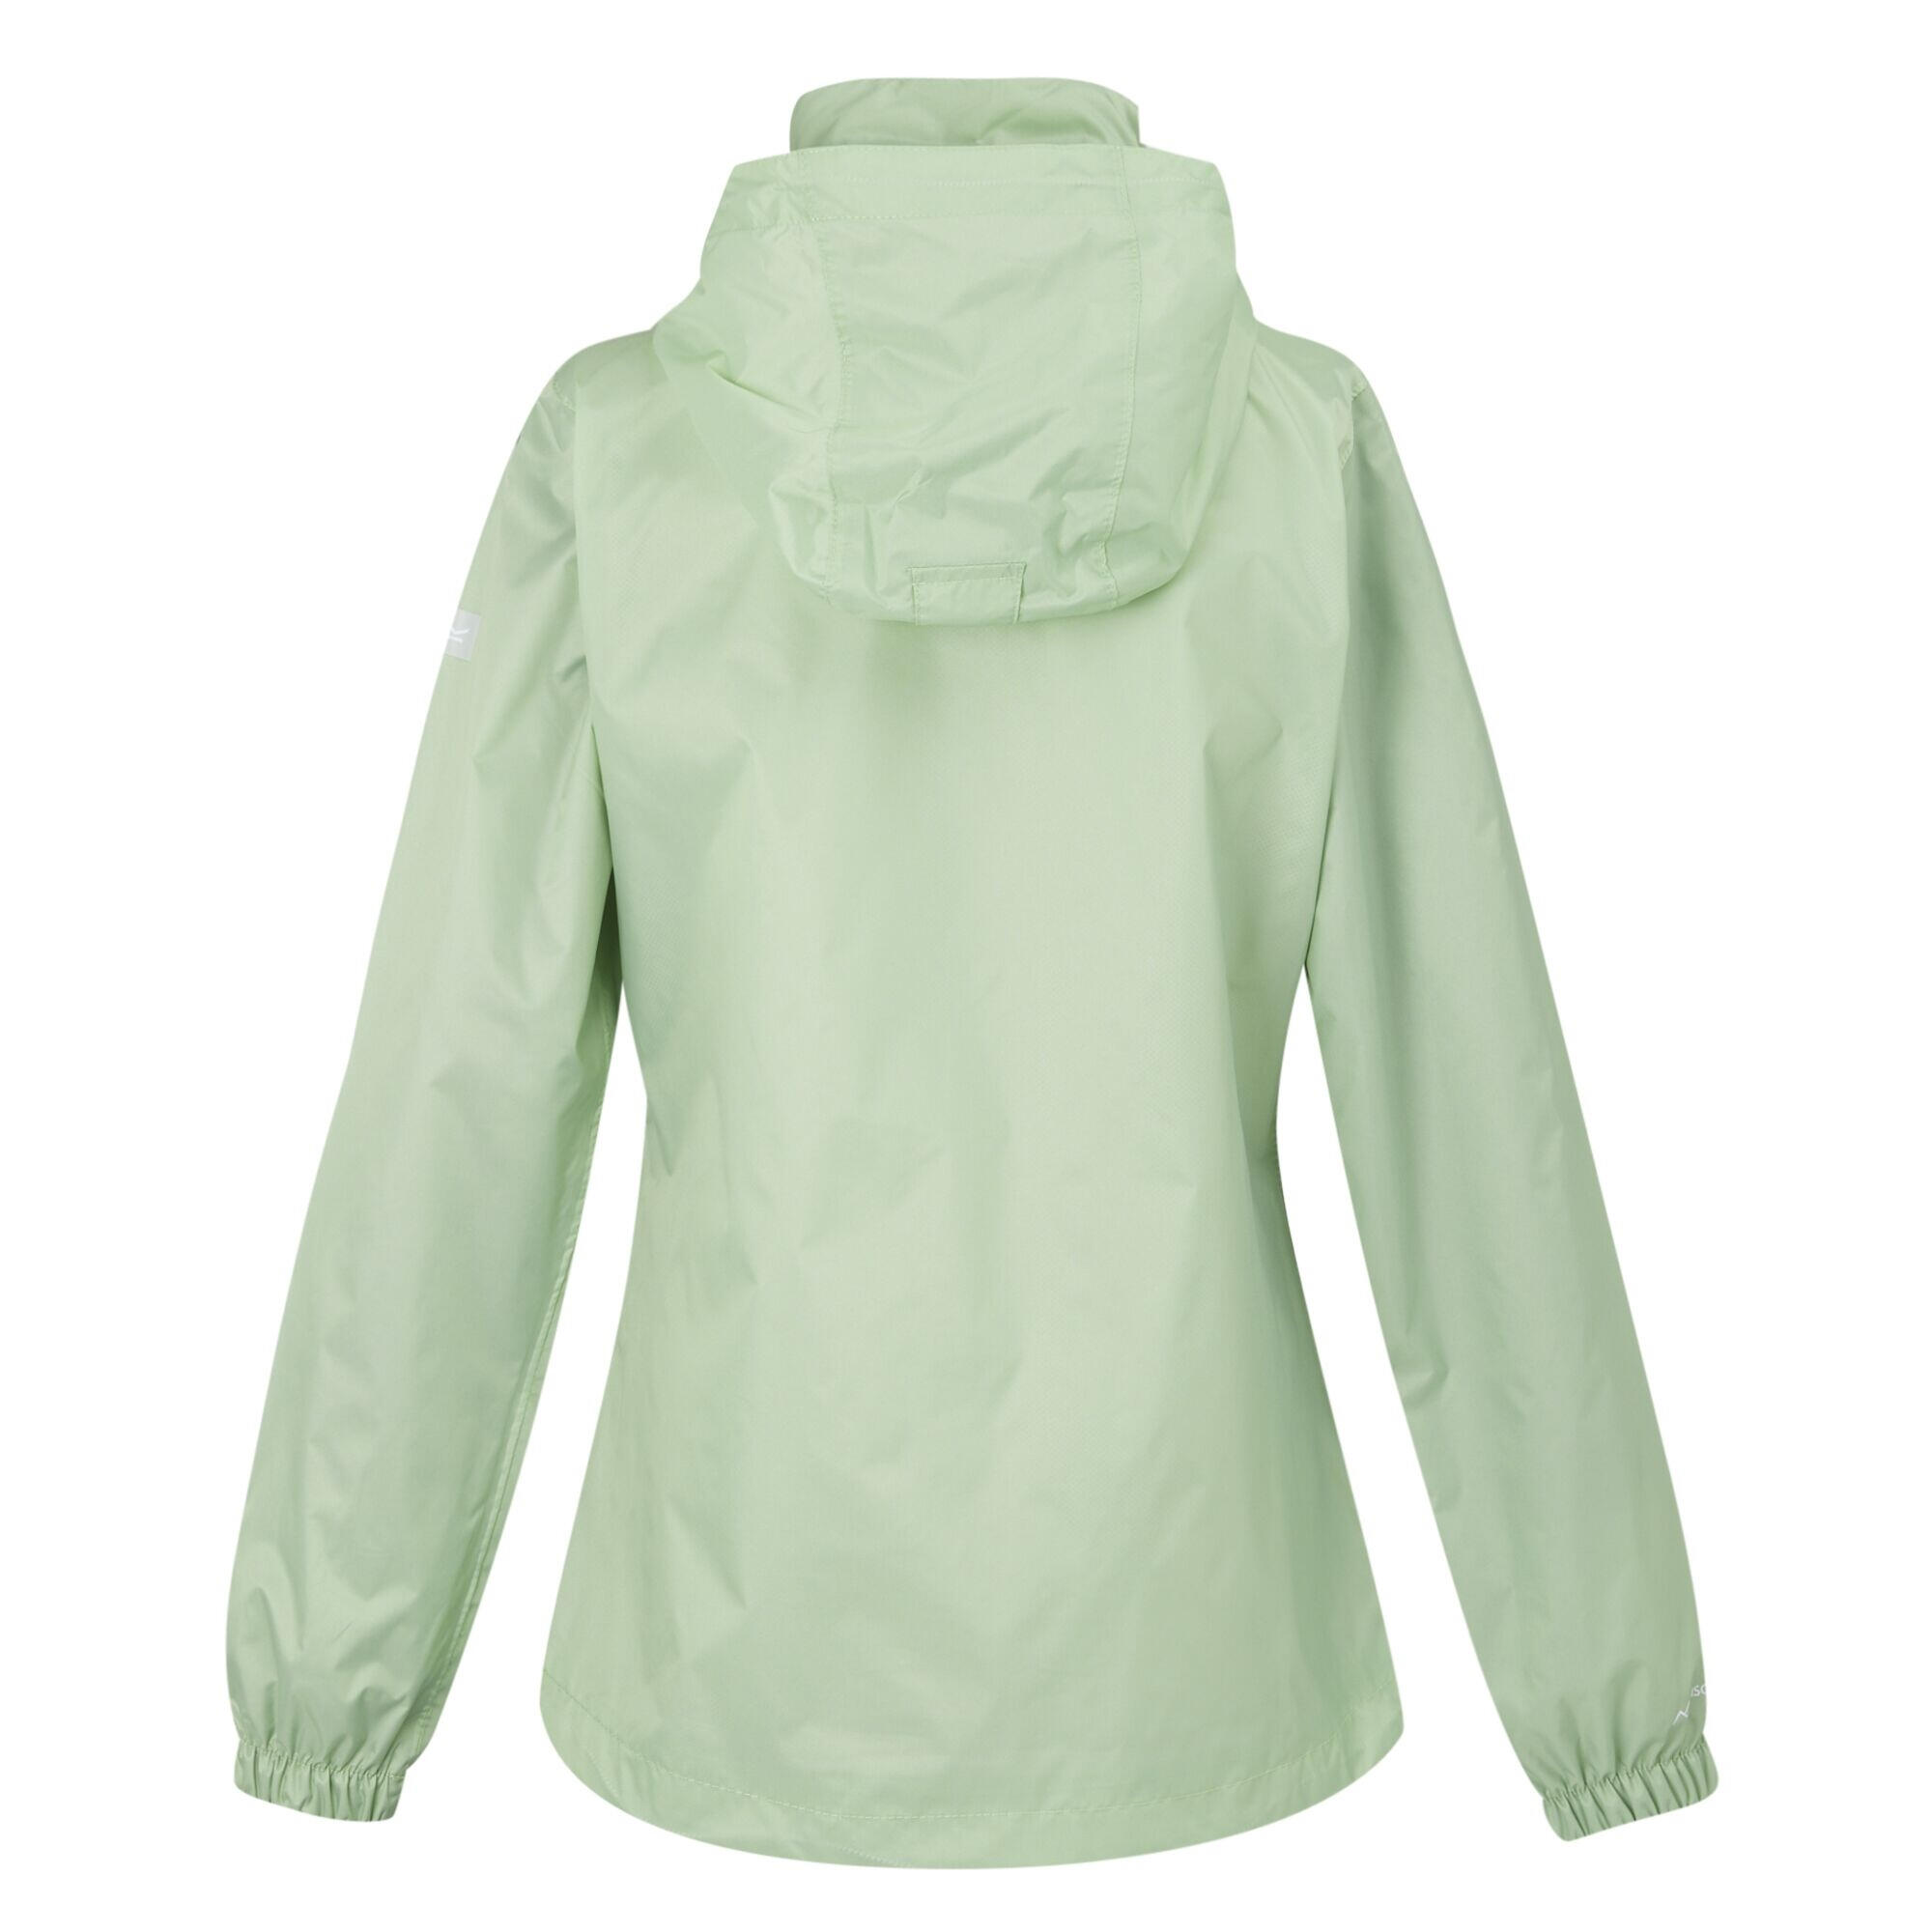 Womens/Ladies Corinne IV Waterproof Jacket (Quiet Green) 2/4